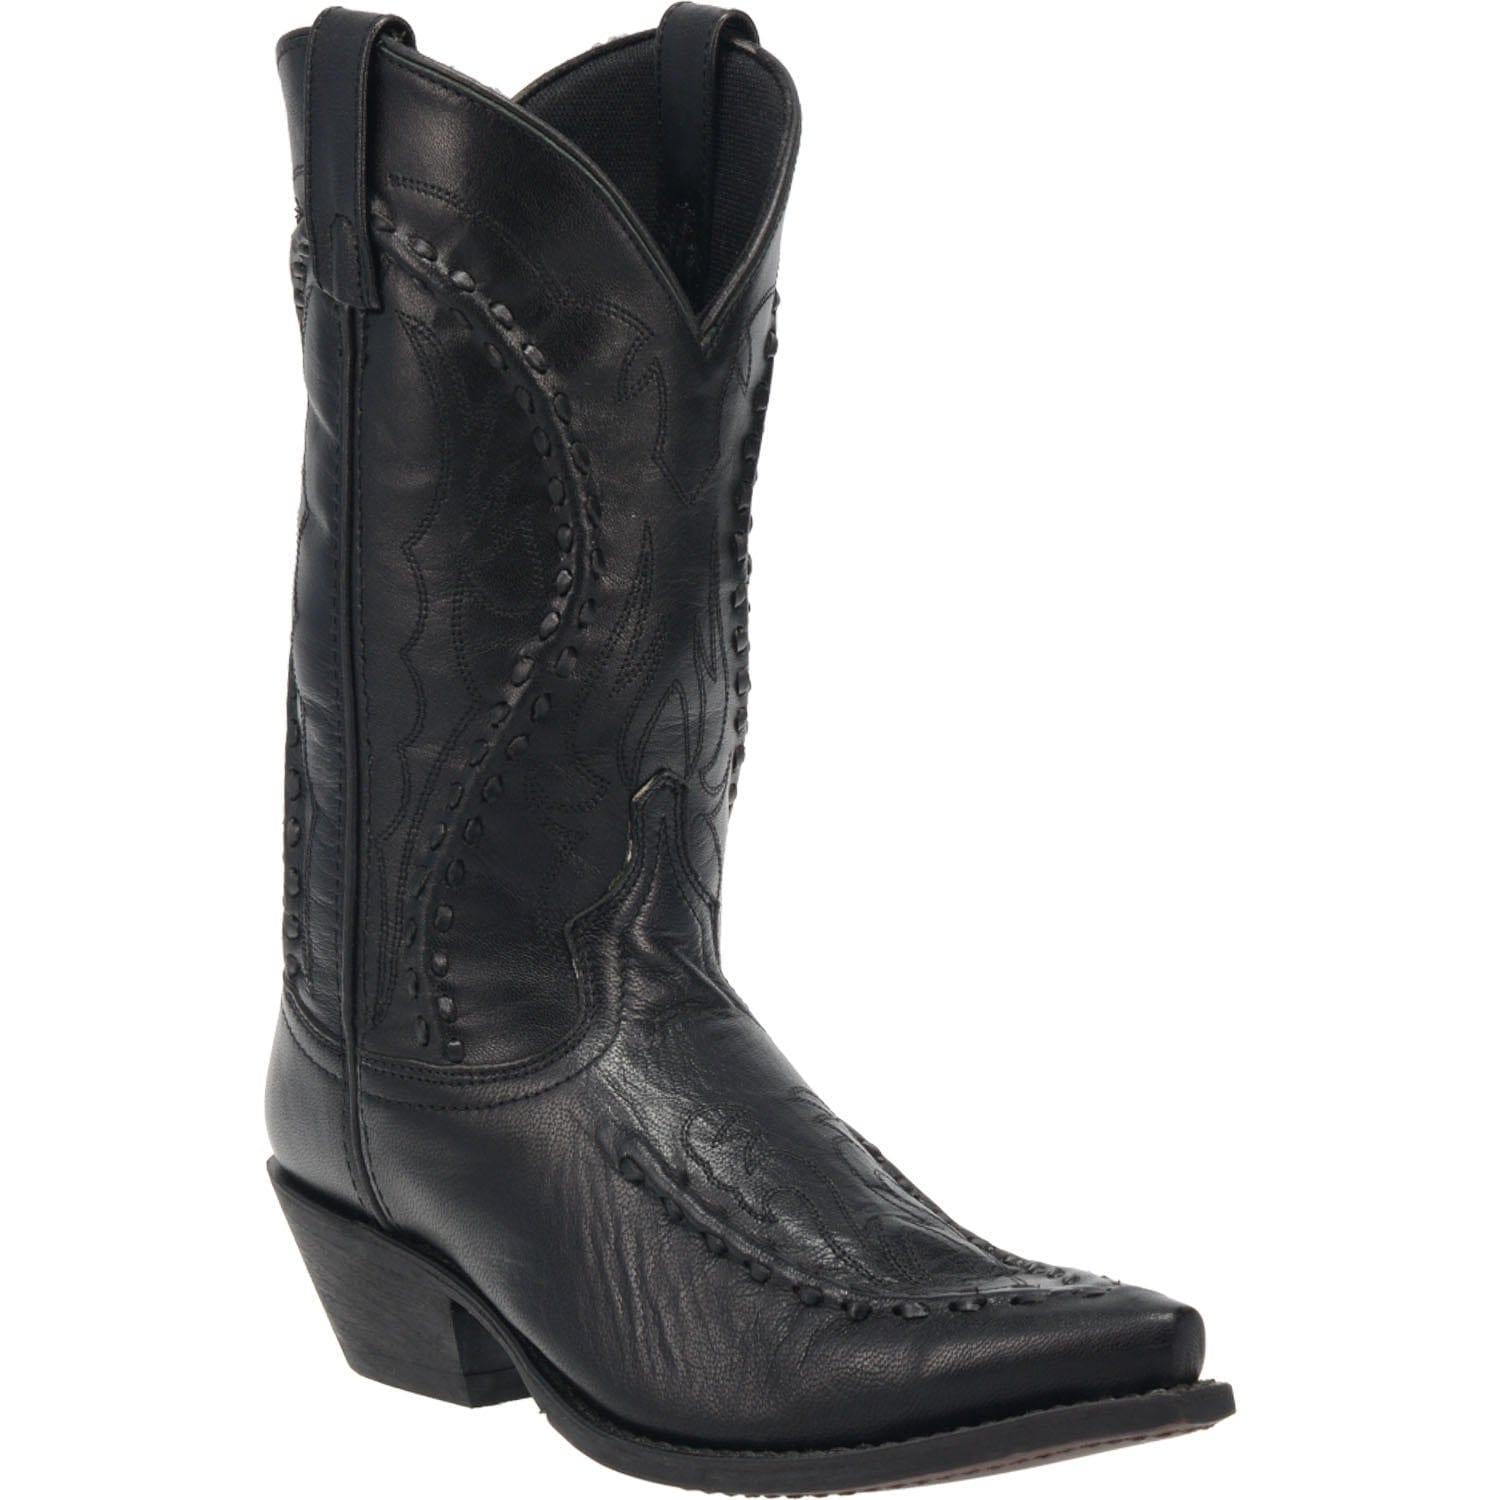 LAREDO Boots Laredo Men's Laramie Black Leather Cowboy Boots 68430